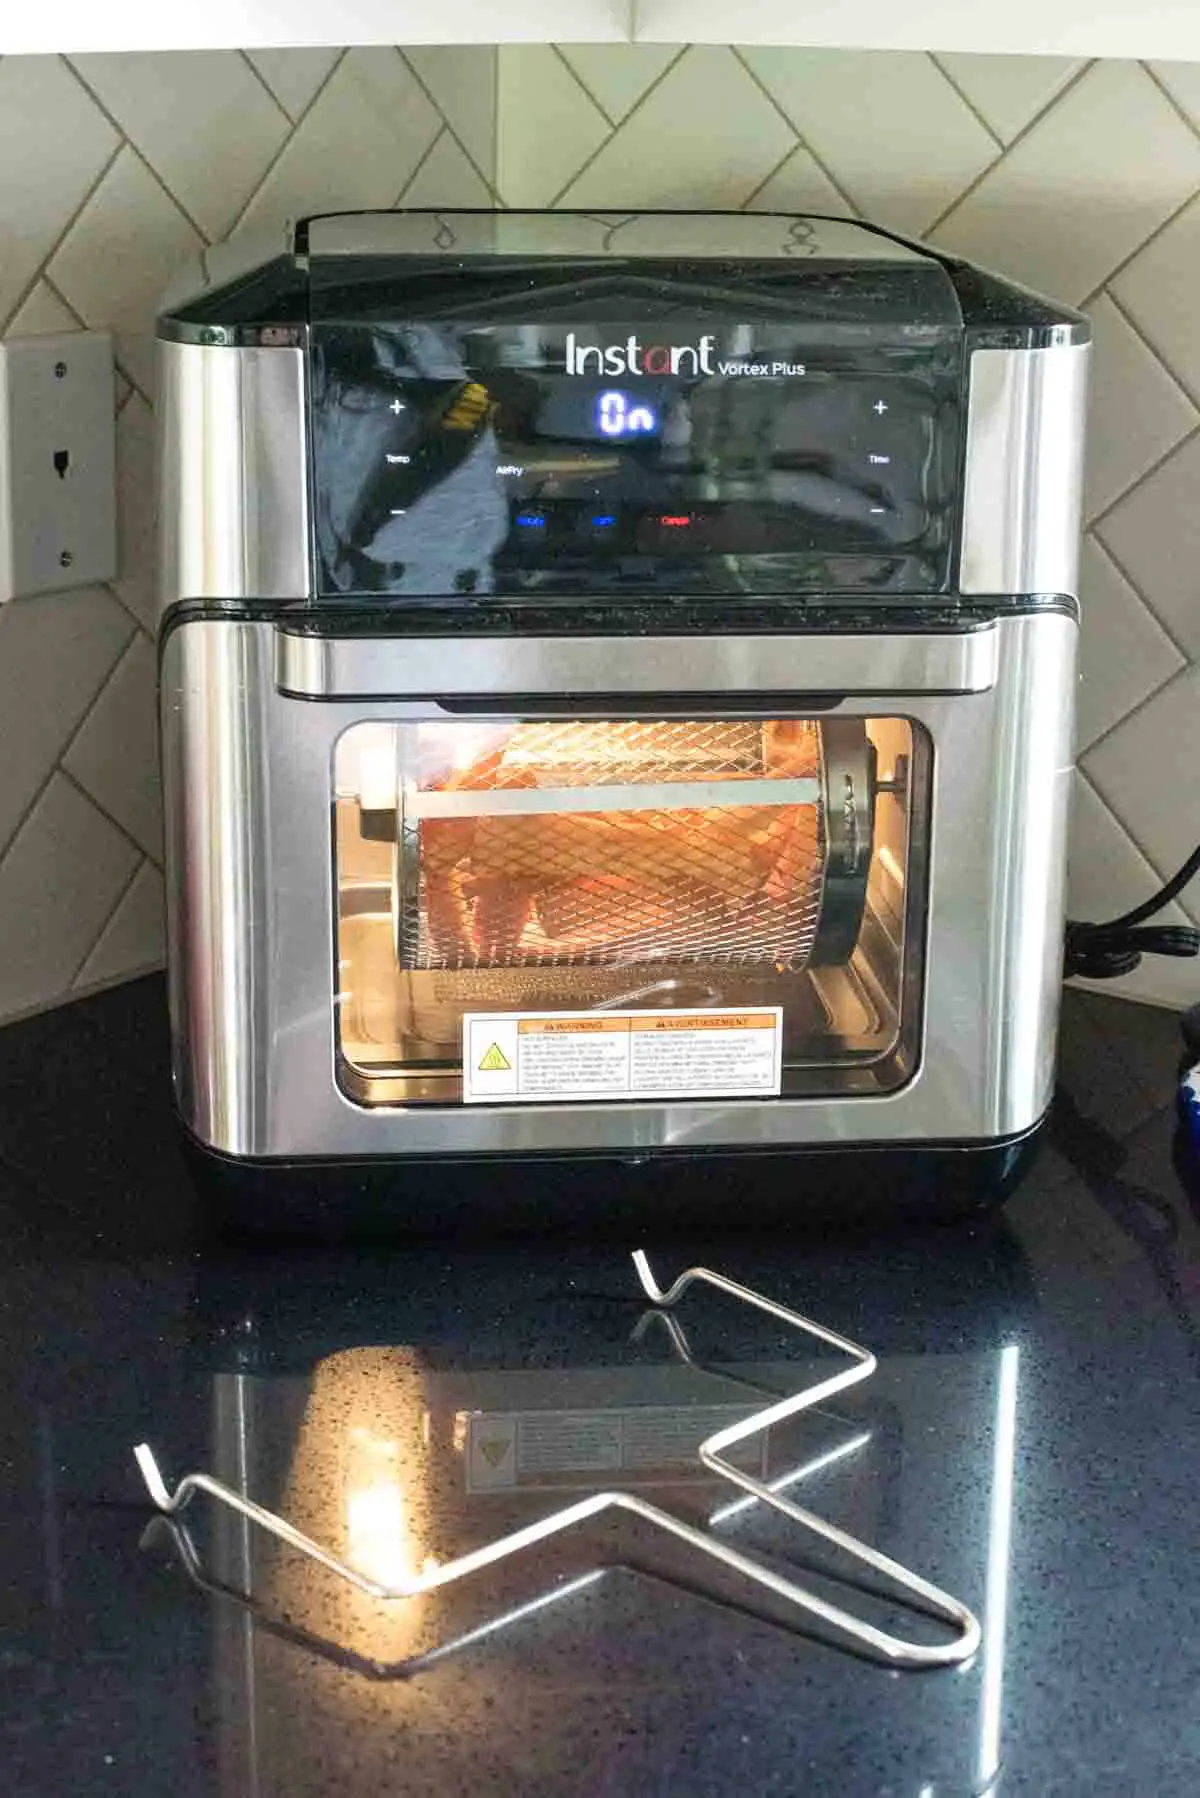 Instant Vortex Plus Air Fryer Oven Review